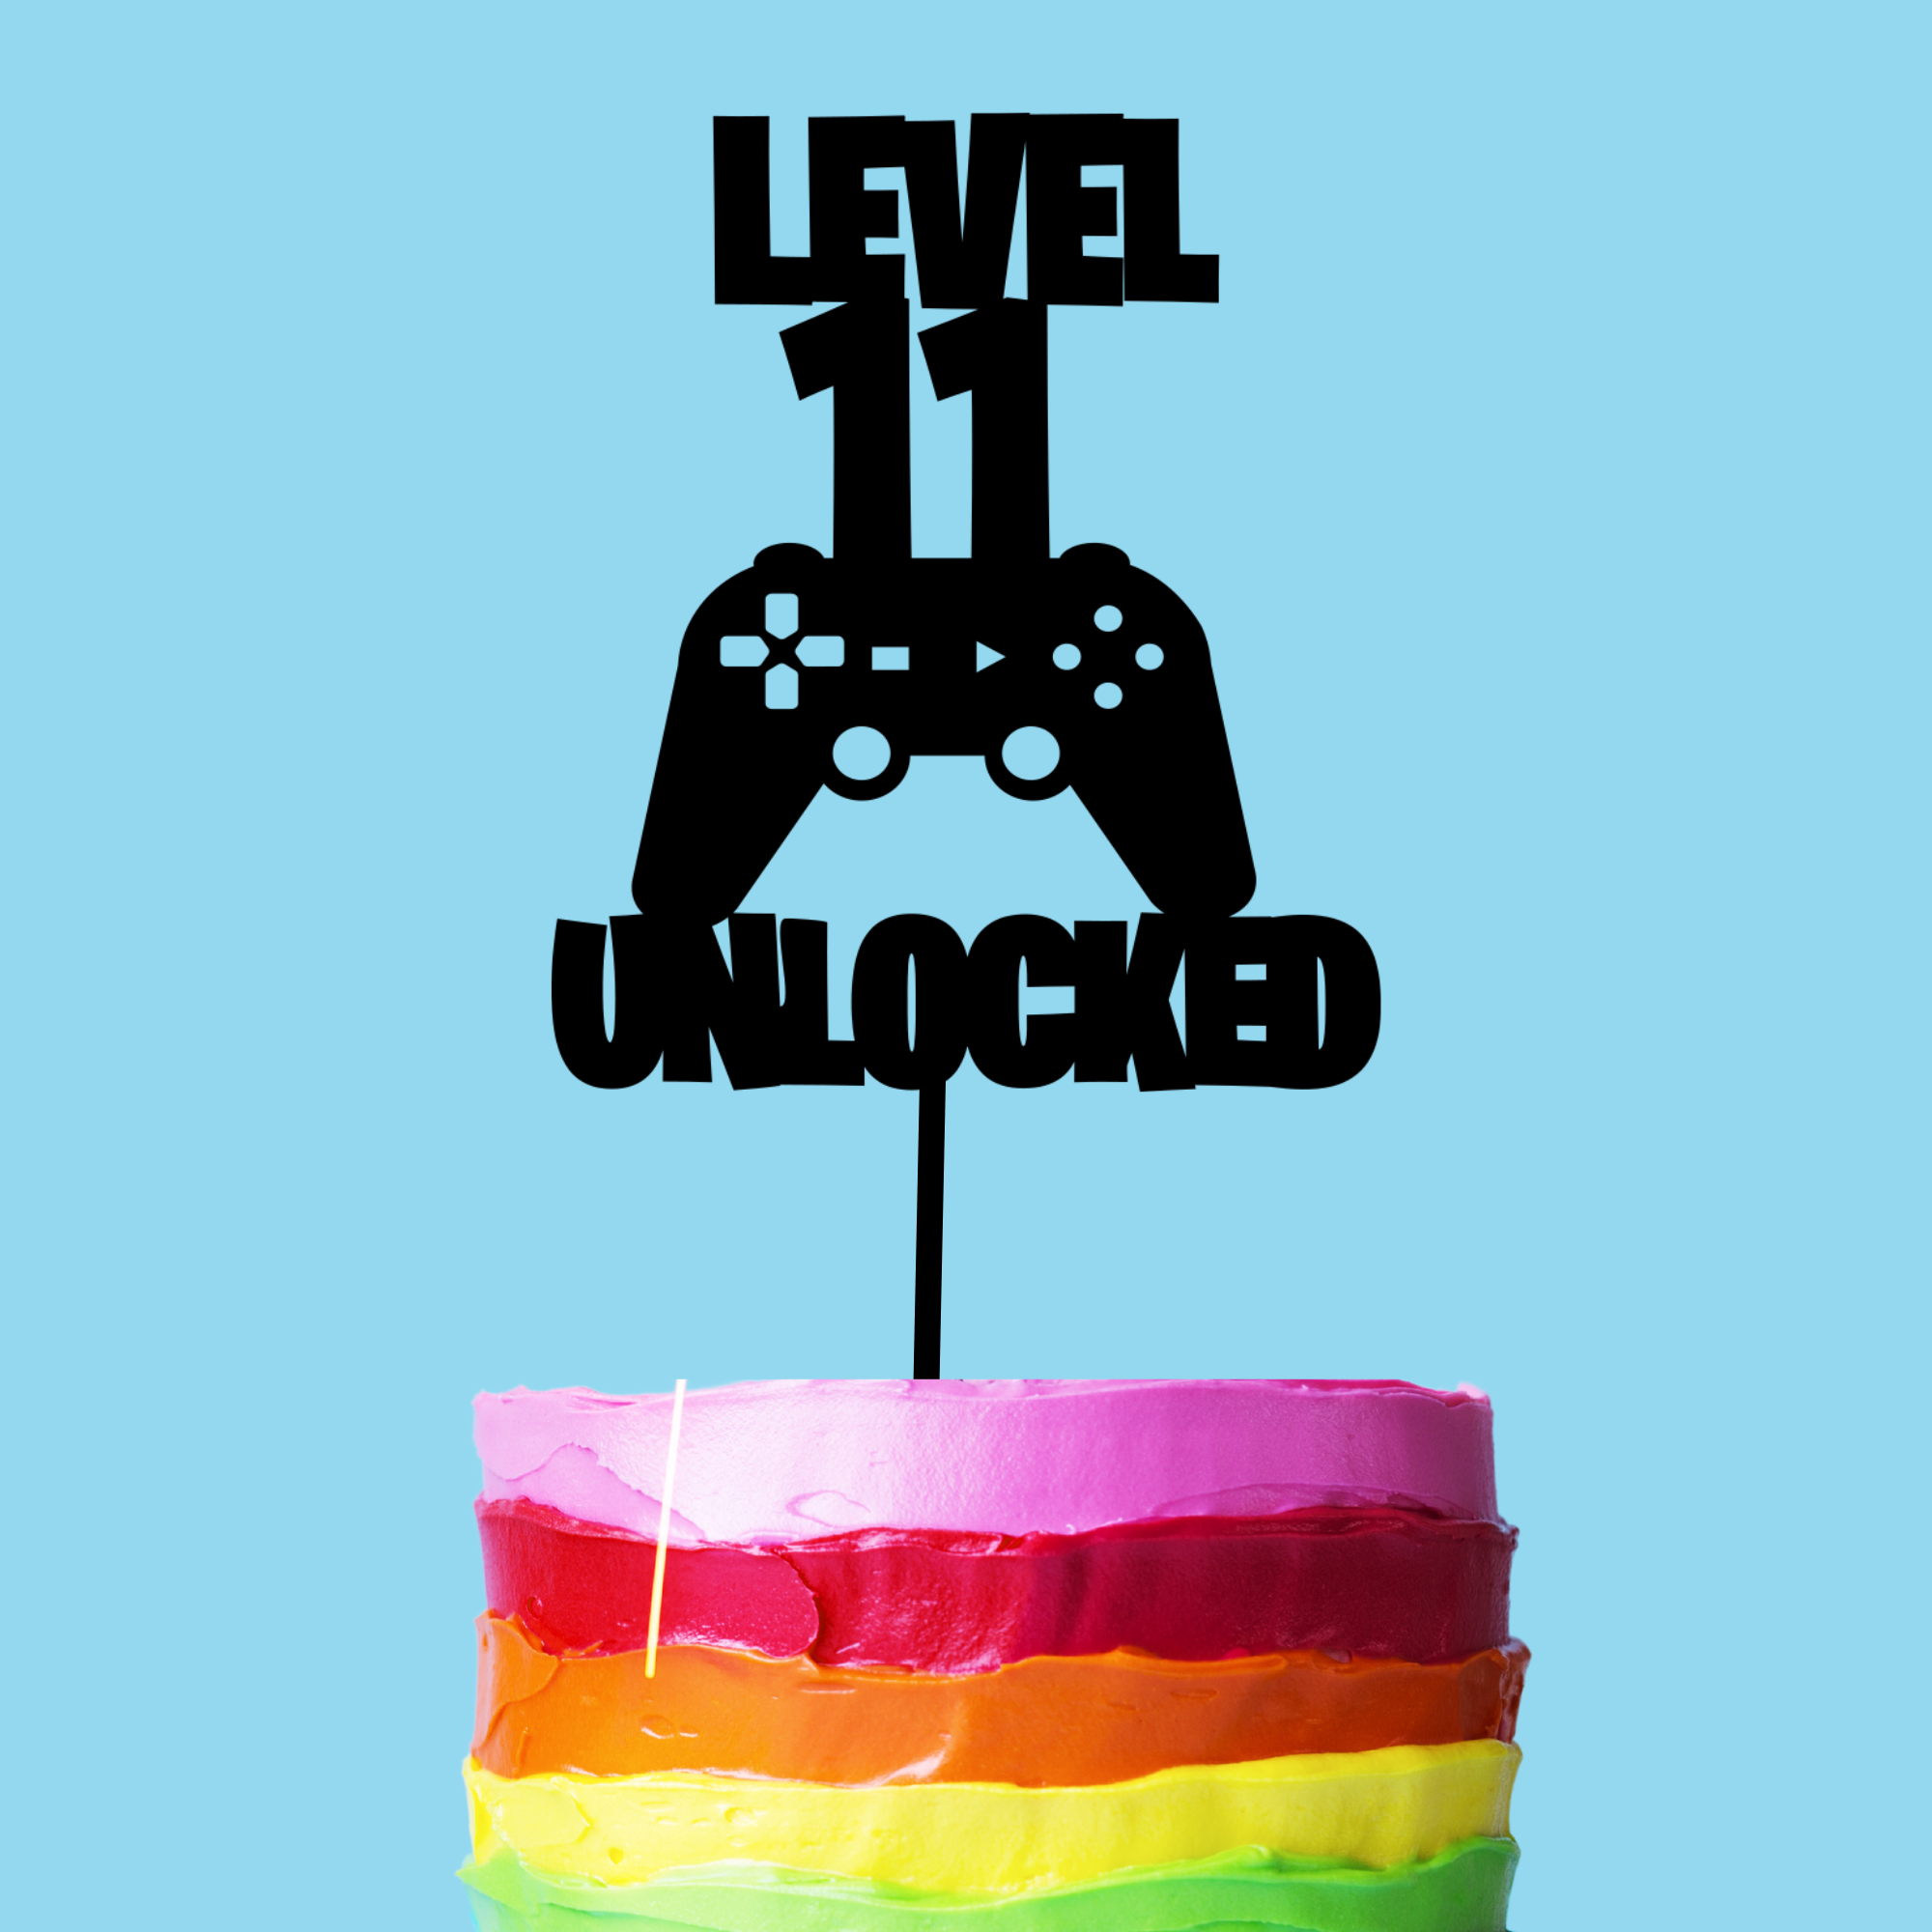 Level 11 Unlocked Gamer Cake Topper